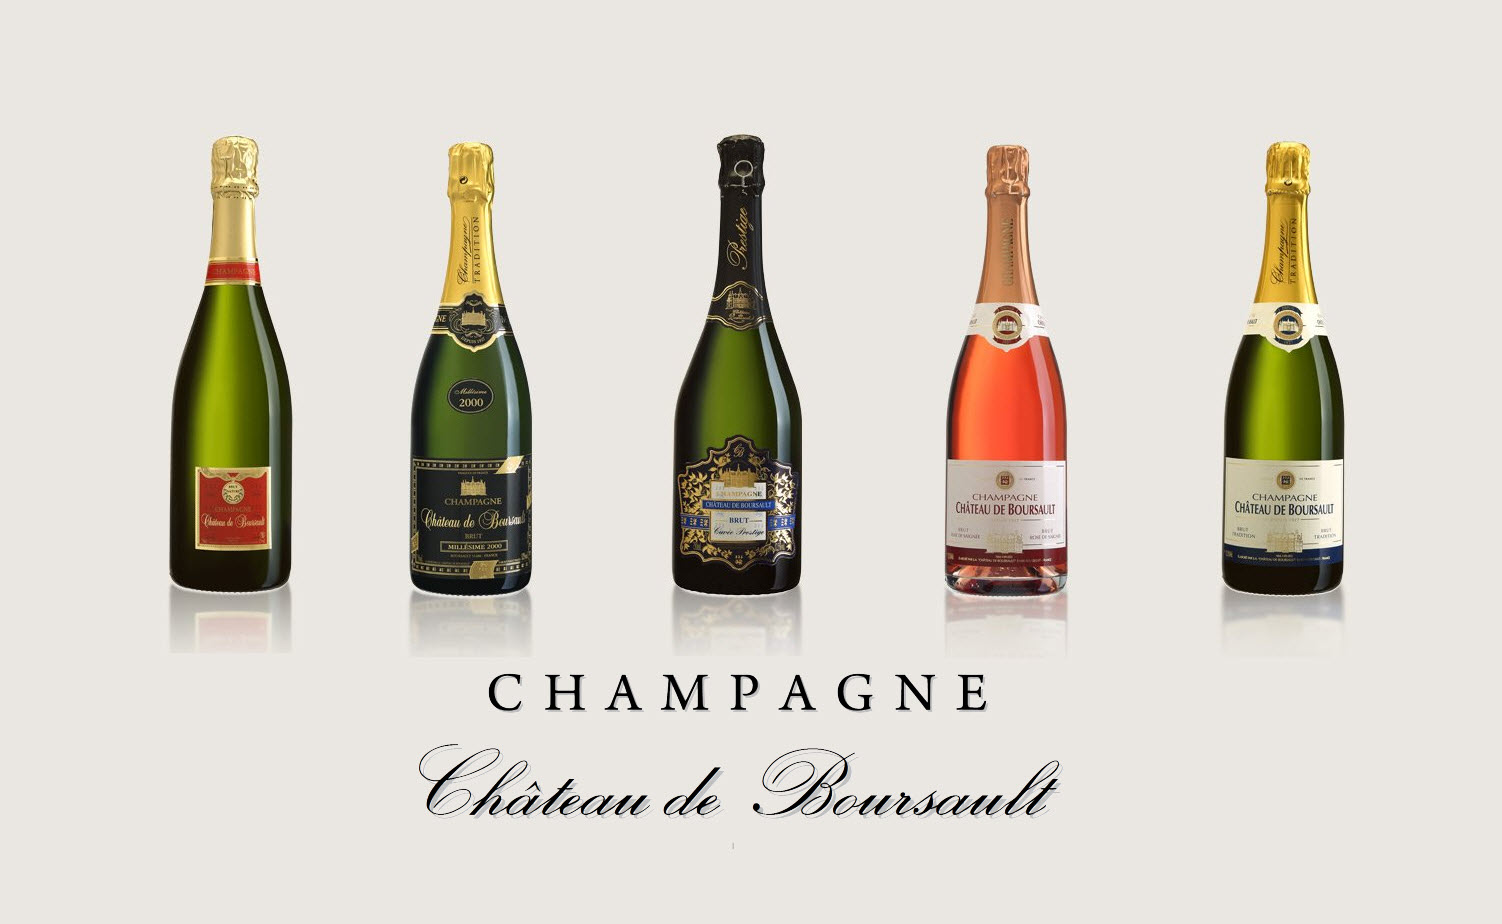 Champagne Chateau de Boursault